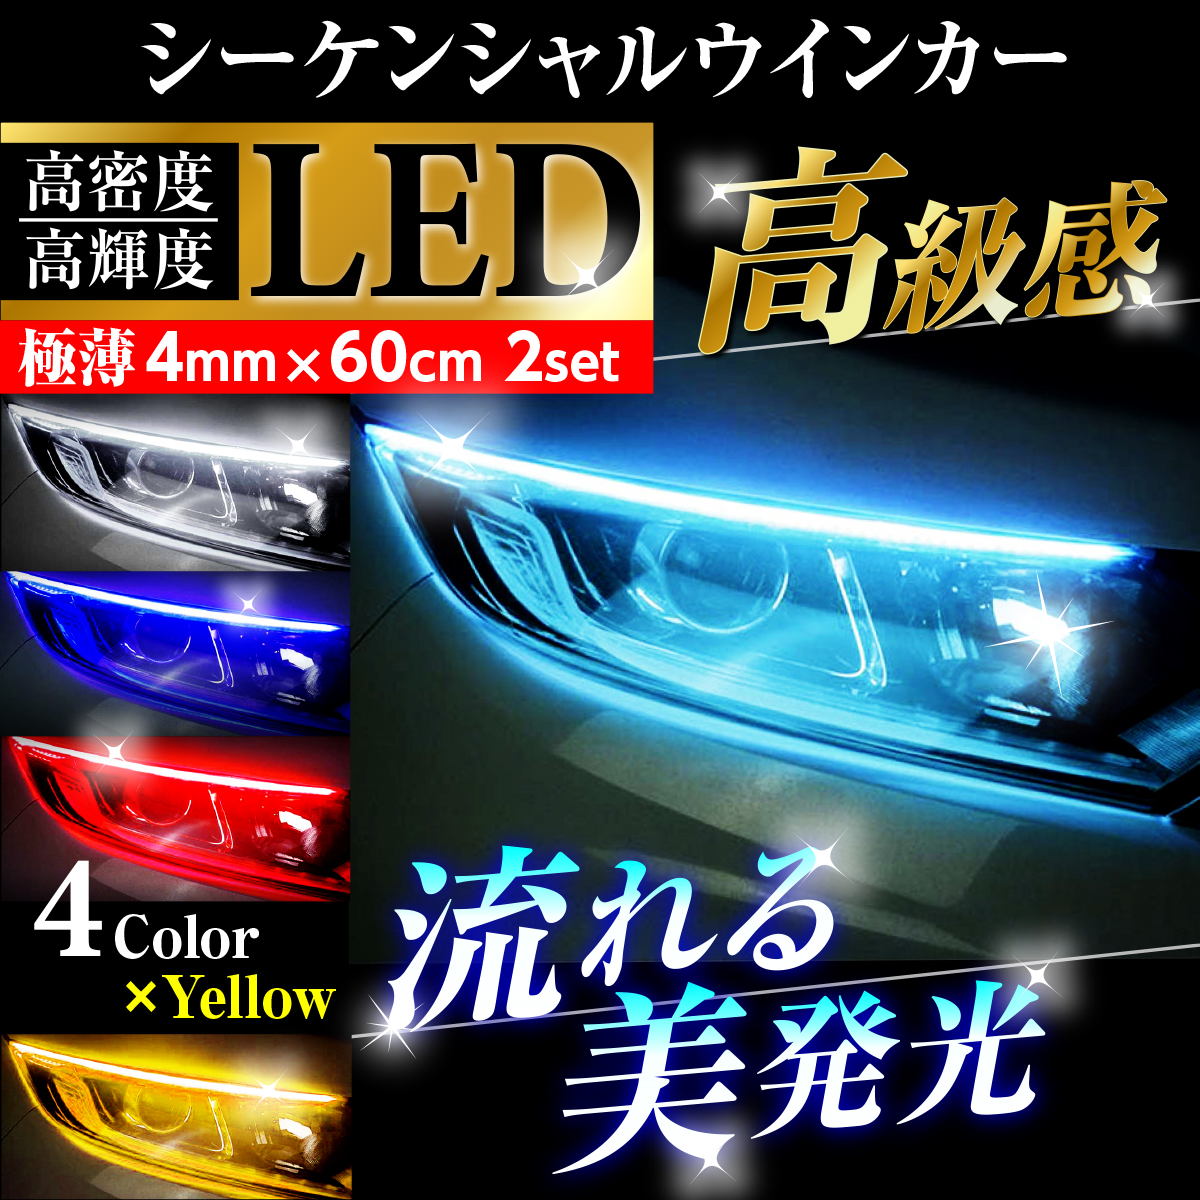 流れるウインカー シーケンシャル ウインカー LED LEDテープ LEDライト 60cm 極薄 2本セット :218-60:HYS 通販  